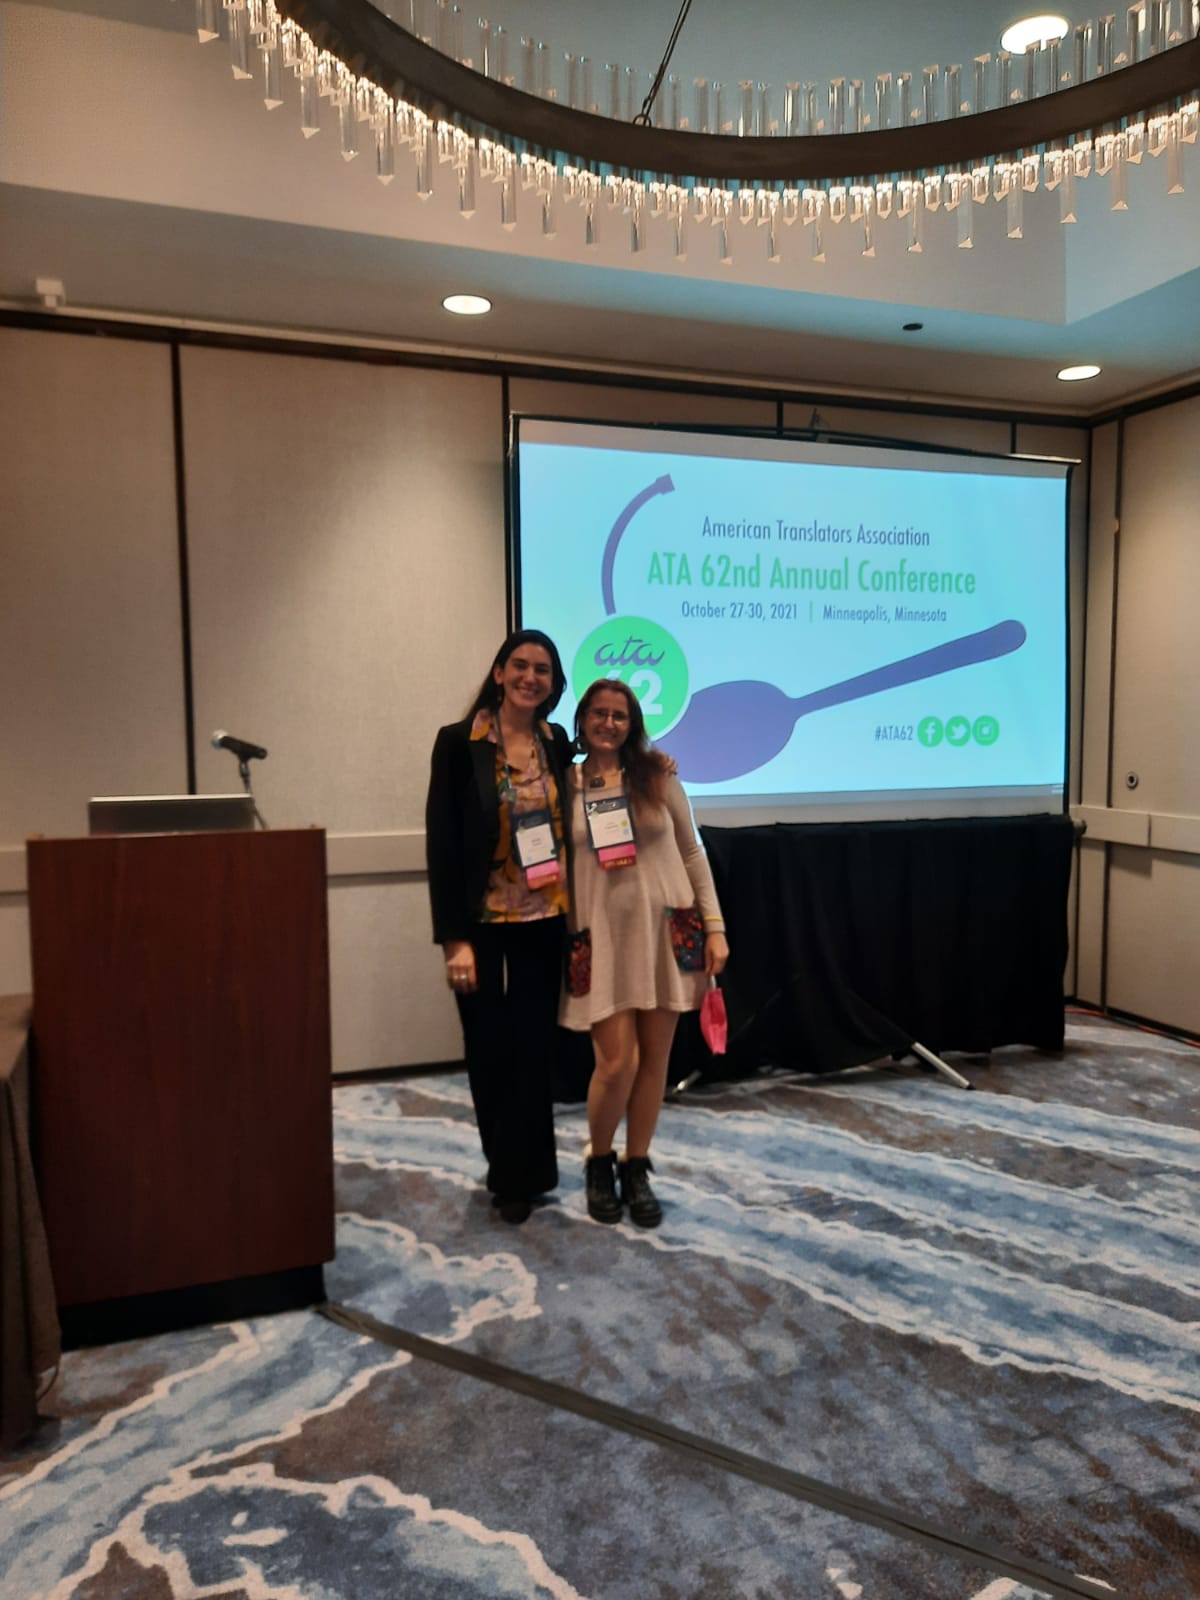 La fotografía muestra a Maitén Vargas y Erika Cosenza de pie al lado de un atril en una sala de conferencias vacía. Detrás de ellas, una pantalla muestra el logo de la ATA 62nd Annual Conference.